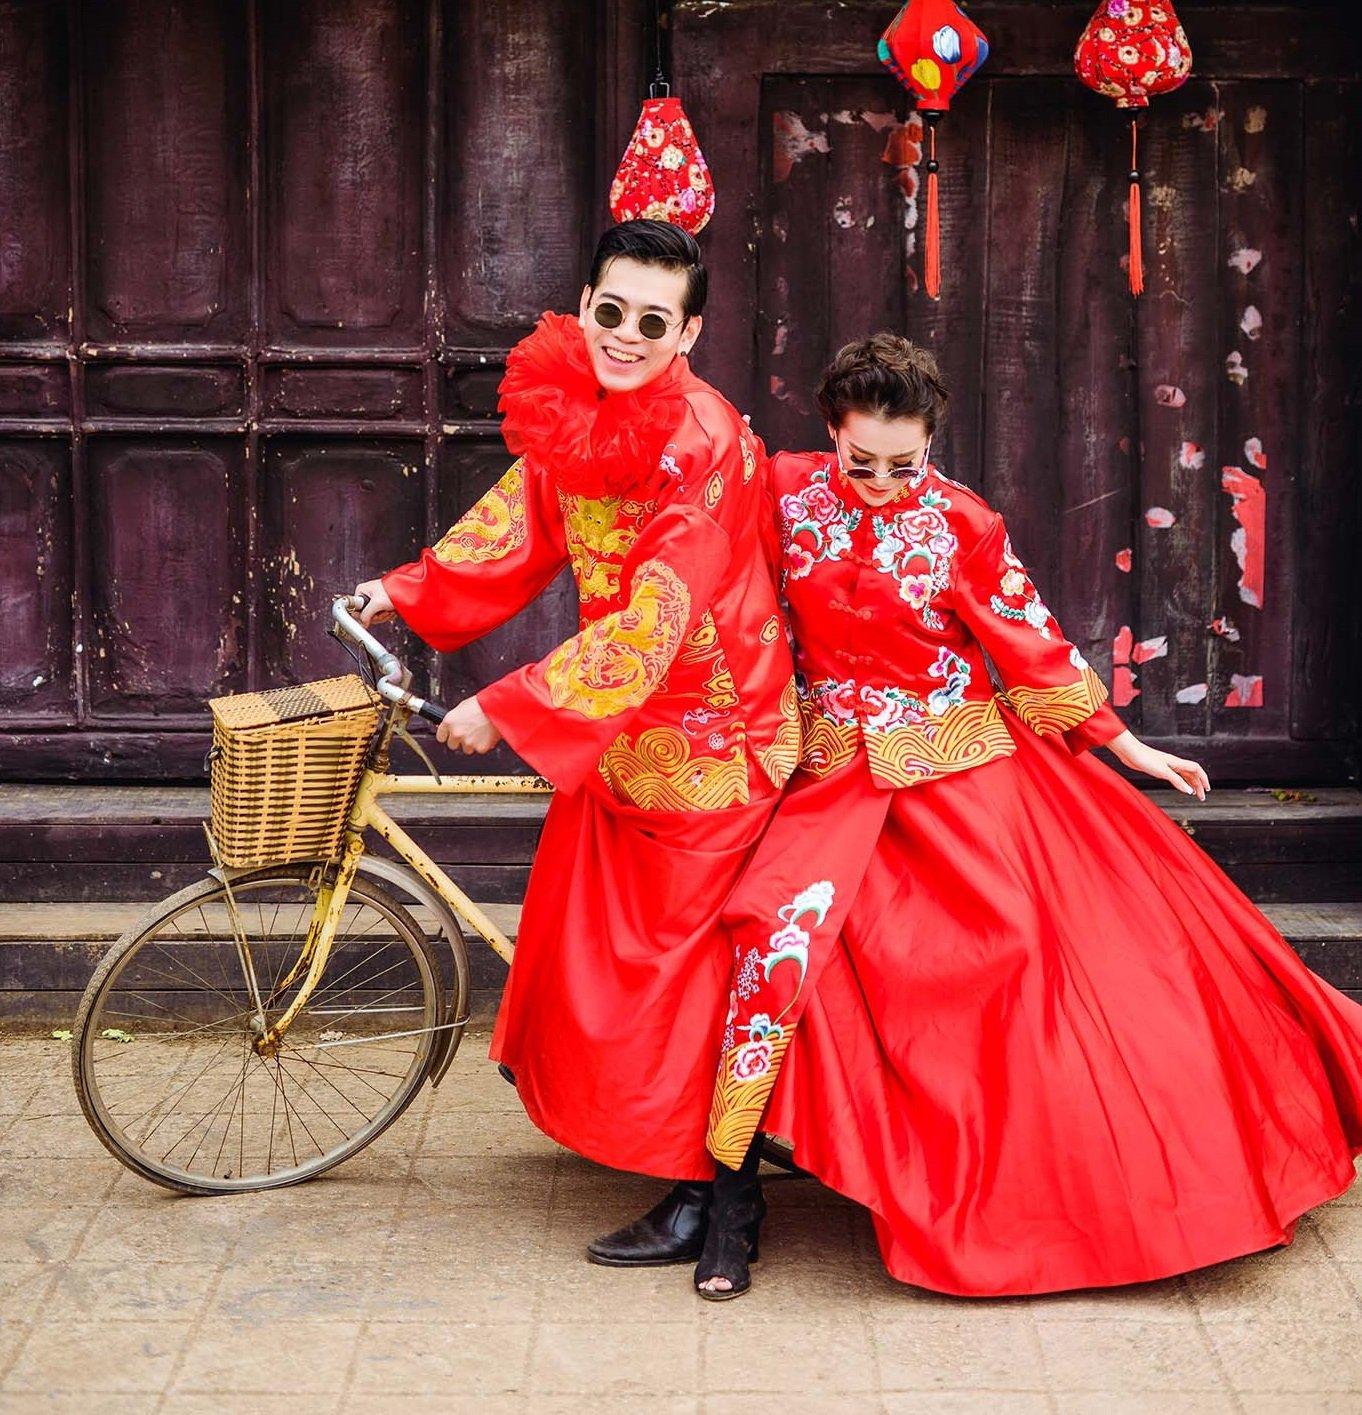 Chụp ảnh cưới kiểu Trung Quốc - ý tưởng mới lạ cho các cặp đôi